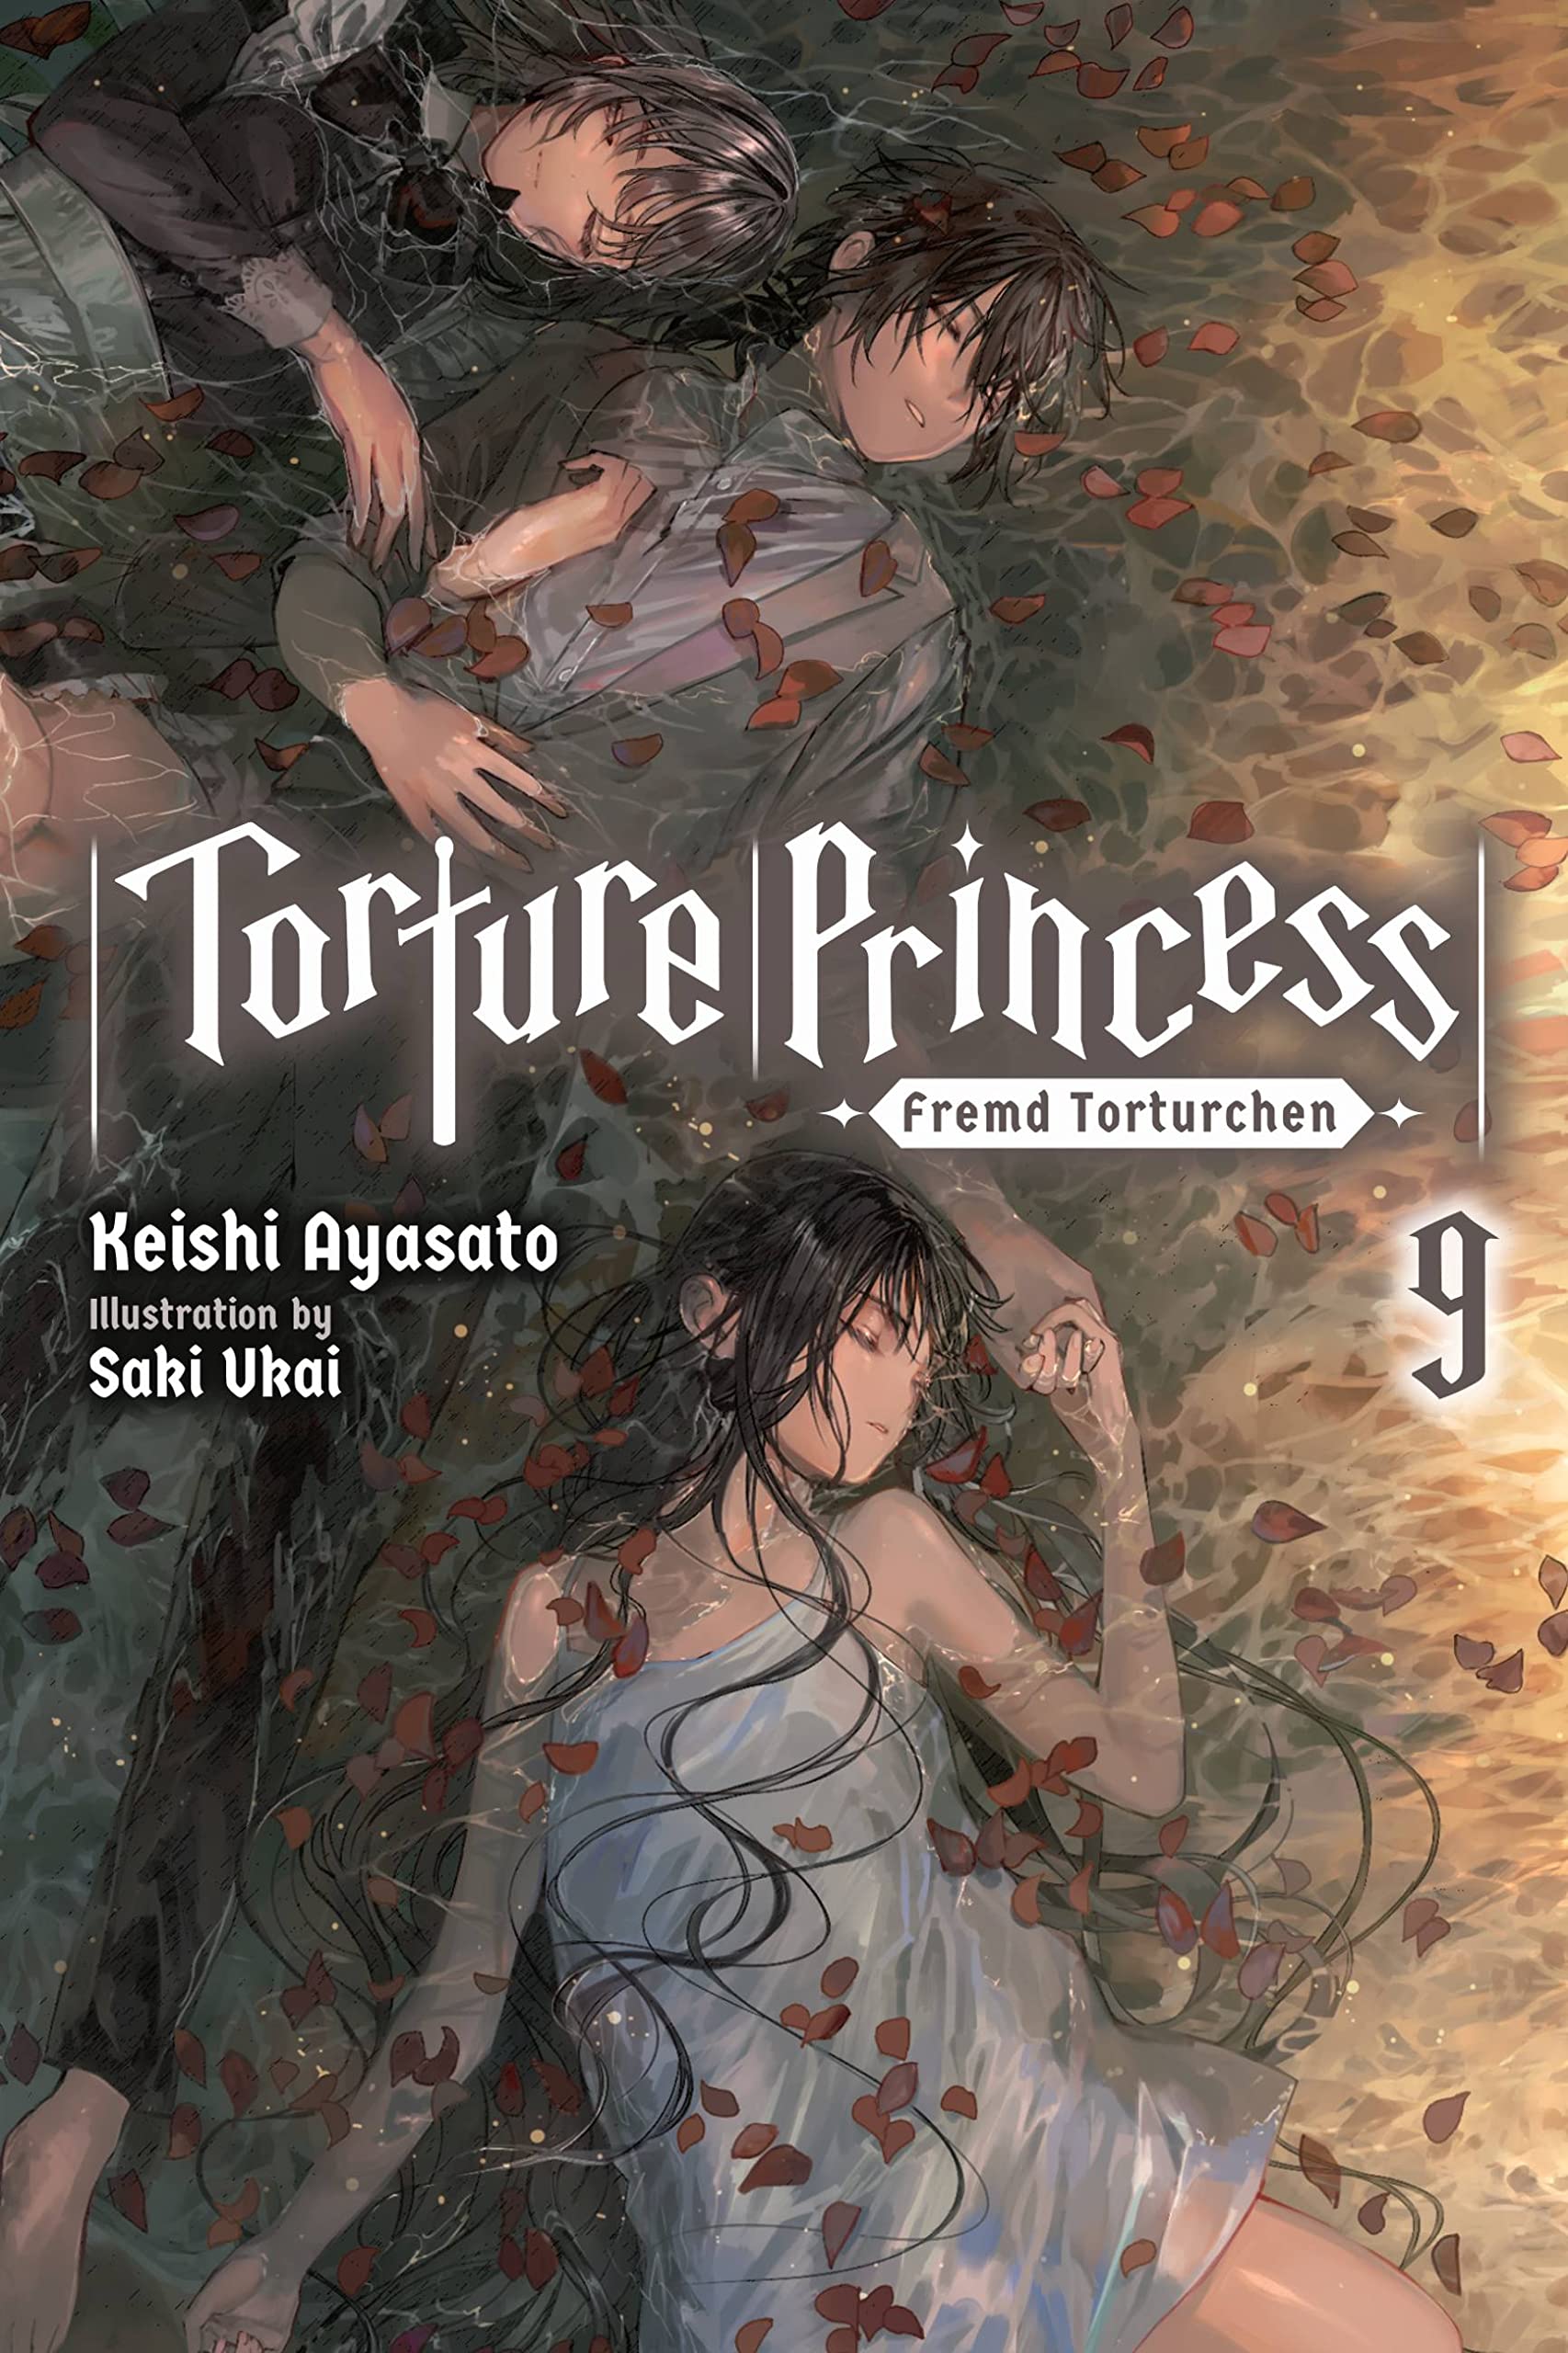 Torture Princess: Fremd Torturchen Vol. 09 (Light Novel)